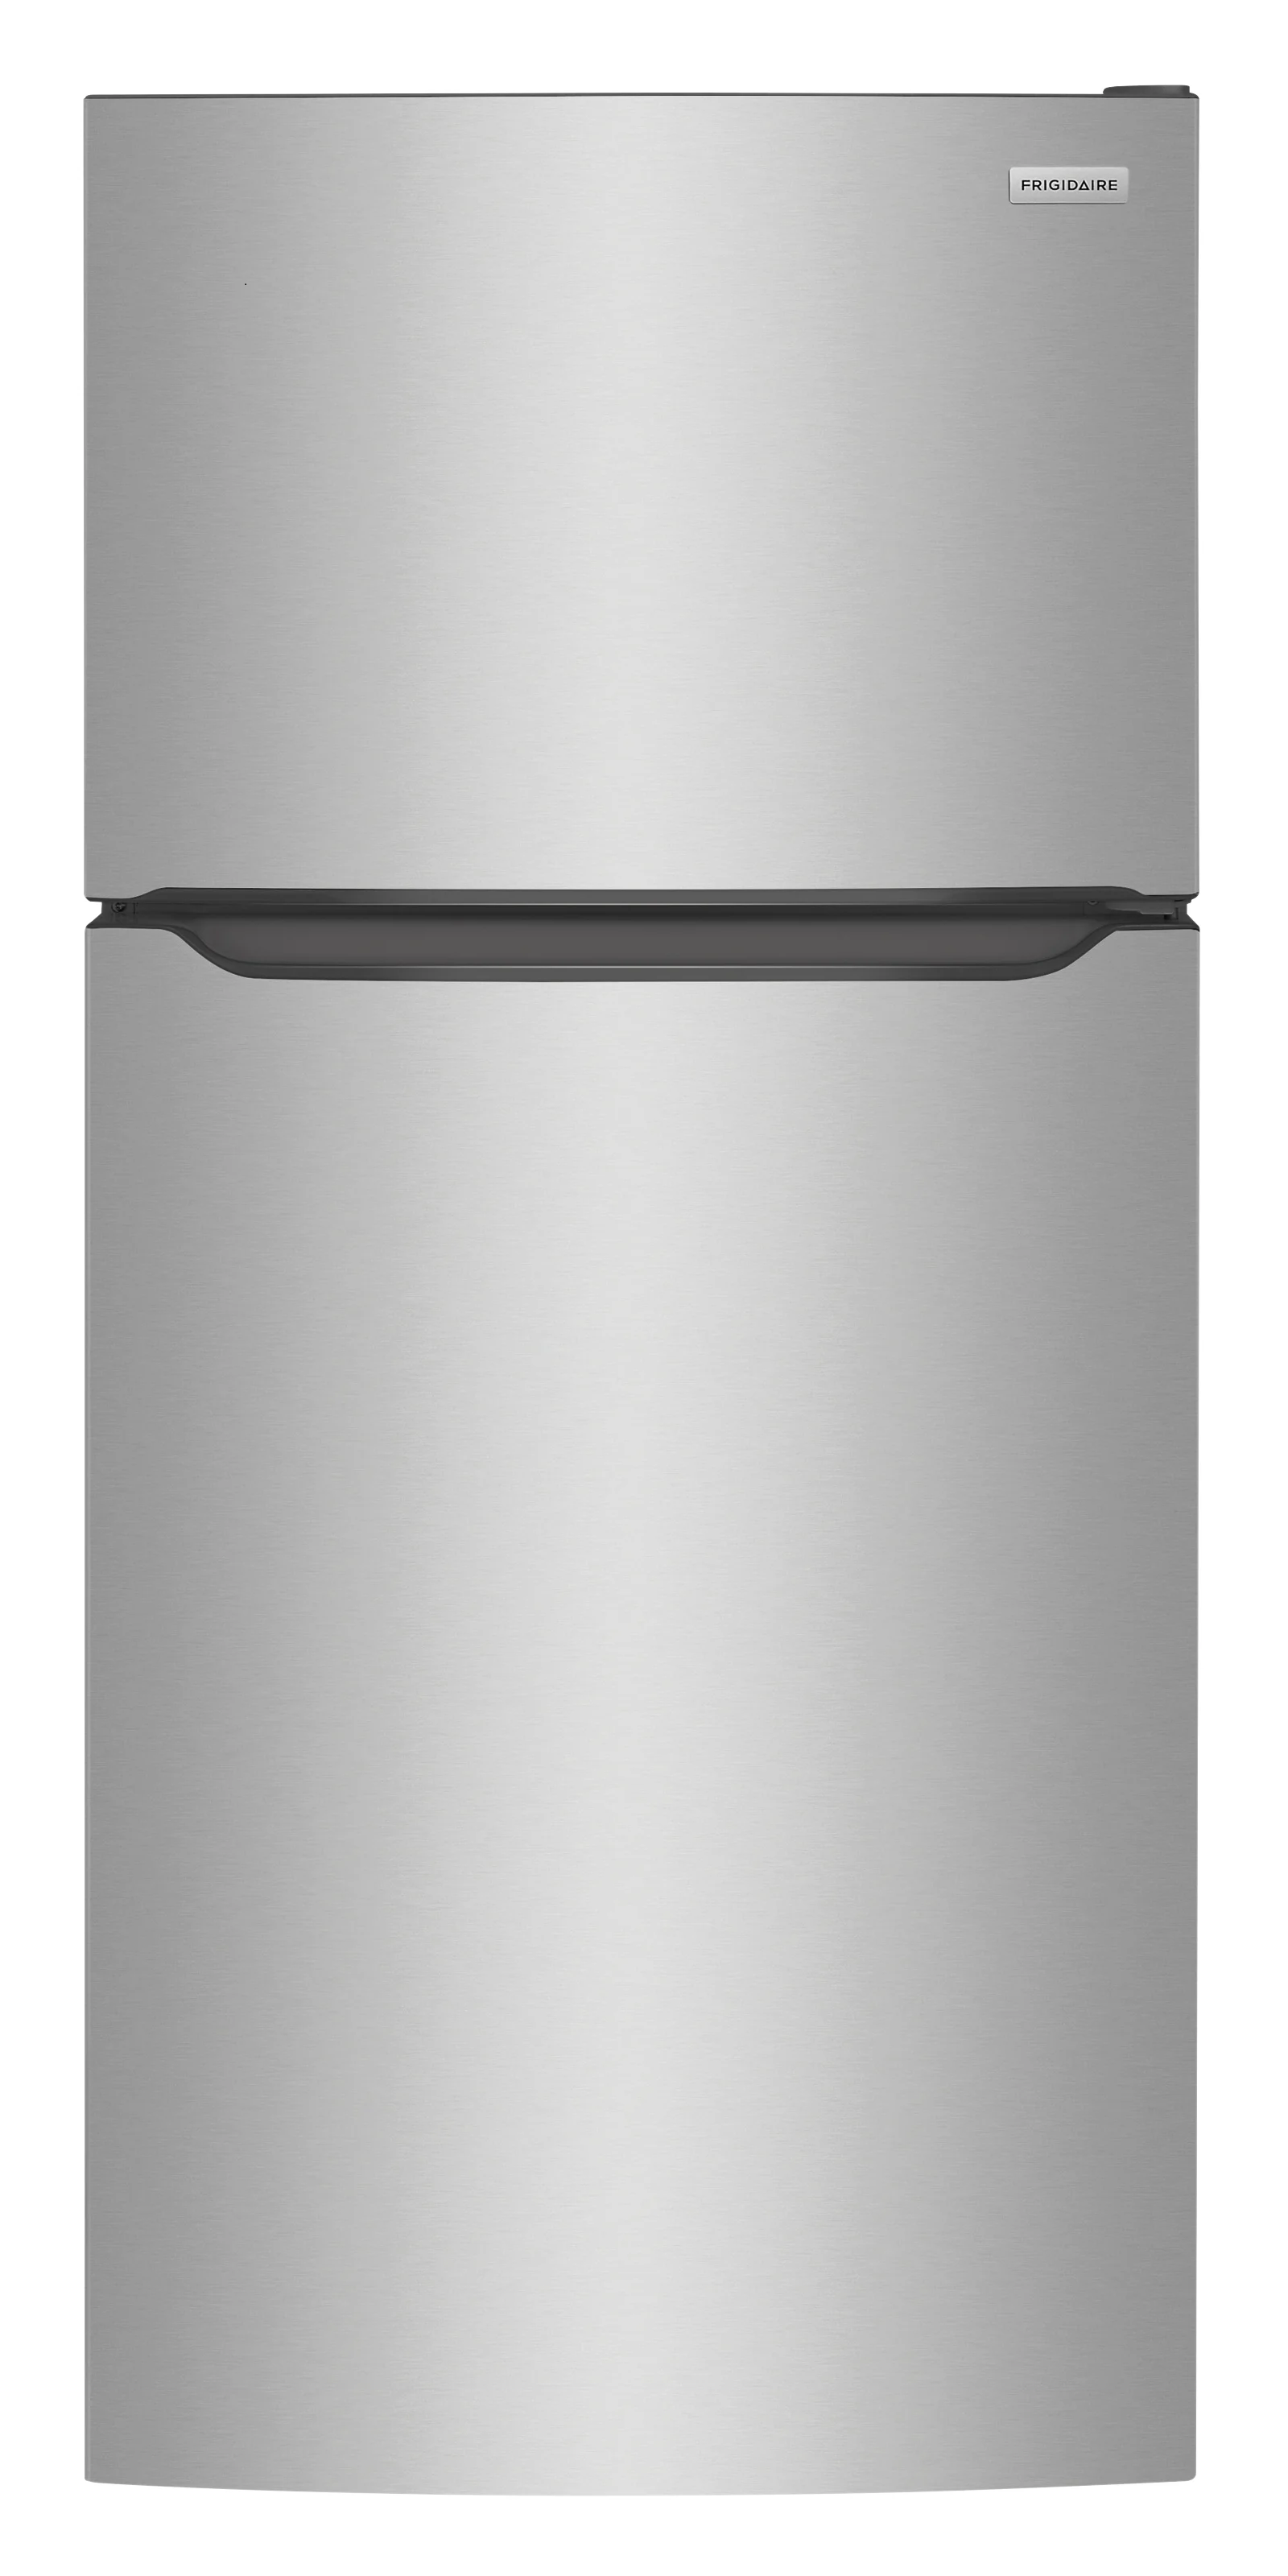 Un réfrigérateurs à 
congélateur supérieur